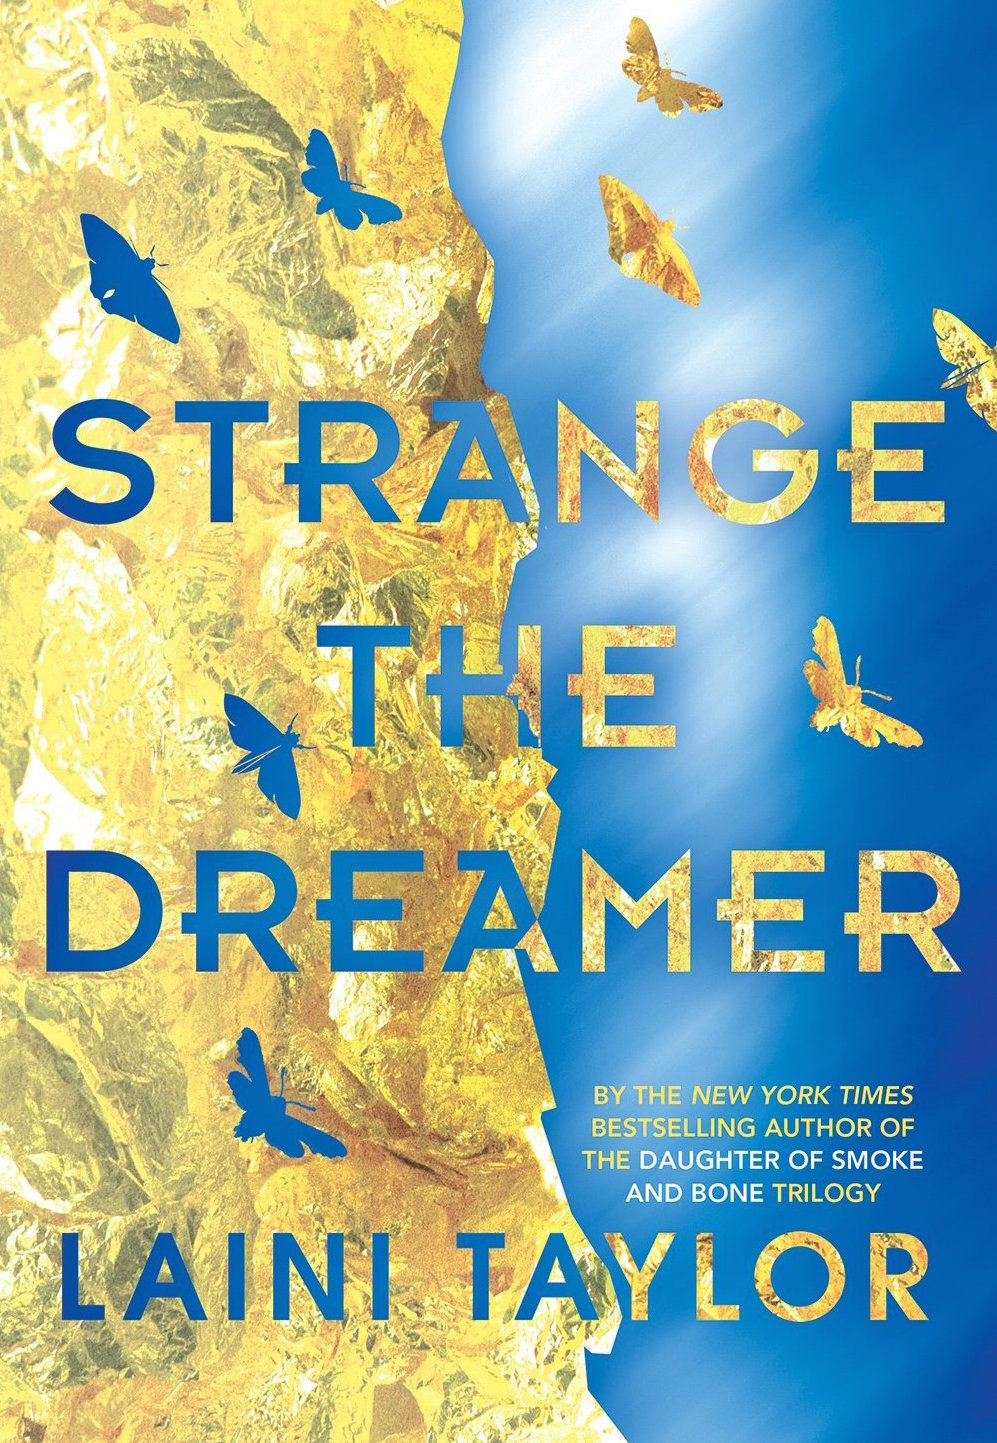 Strange the dreamer cover image